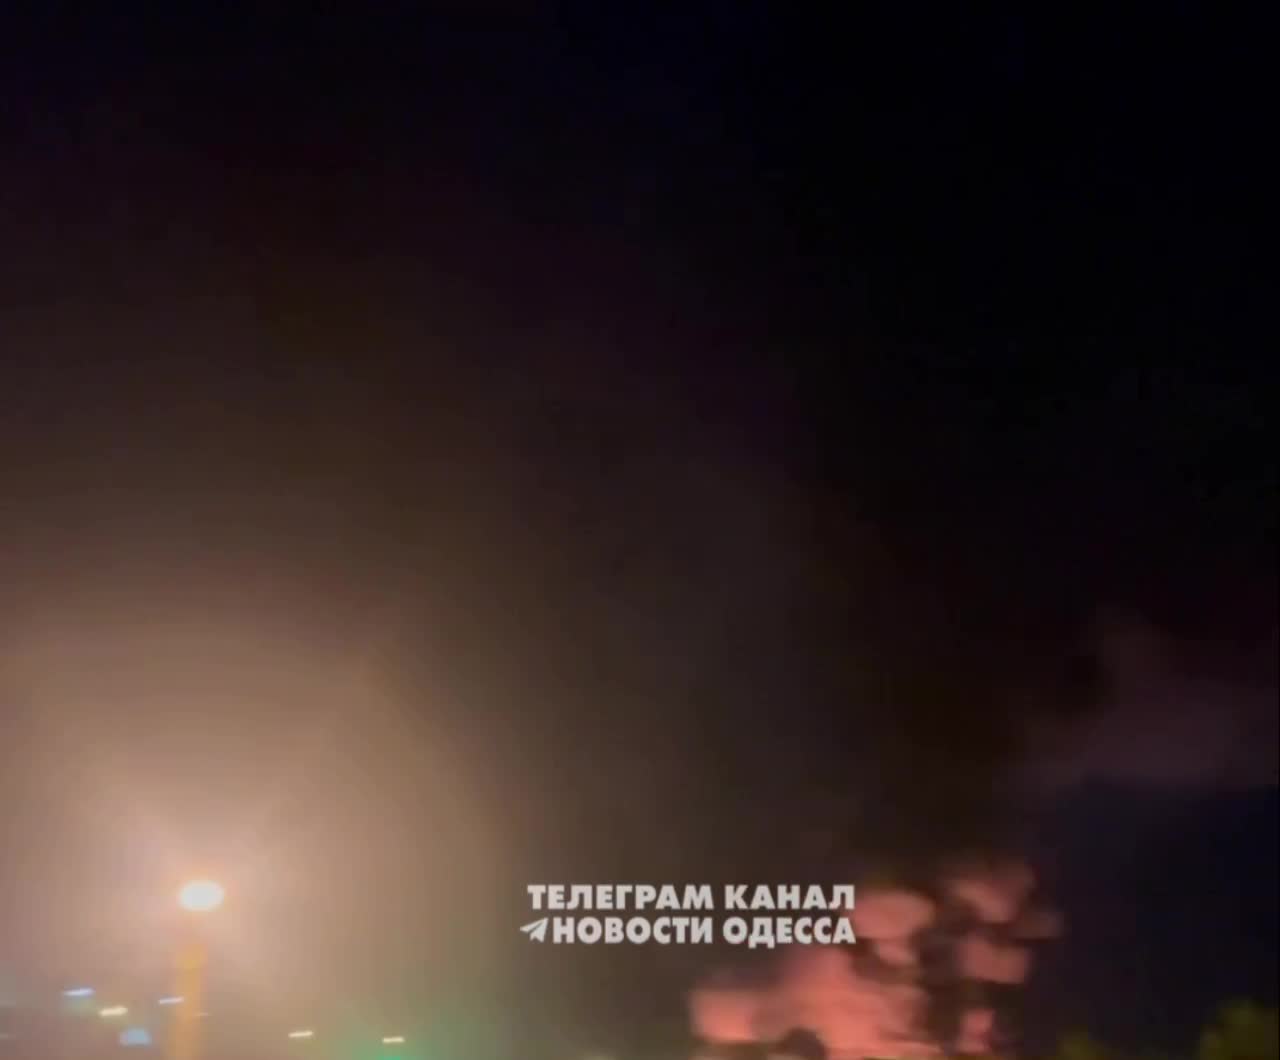 حريق كبير بعد الهجوم الصاروخي المبلغ عنه في أوديسا